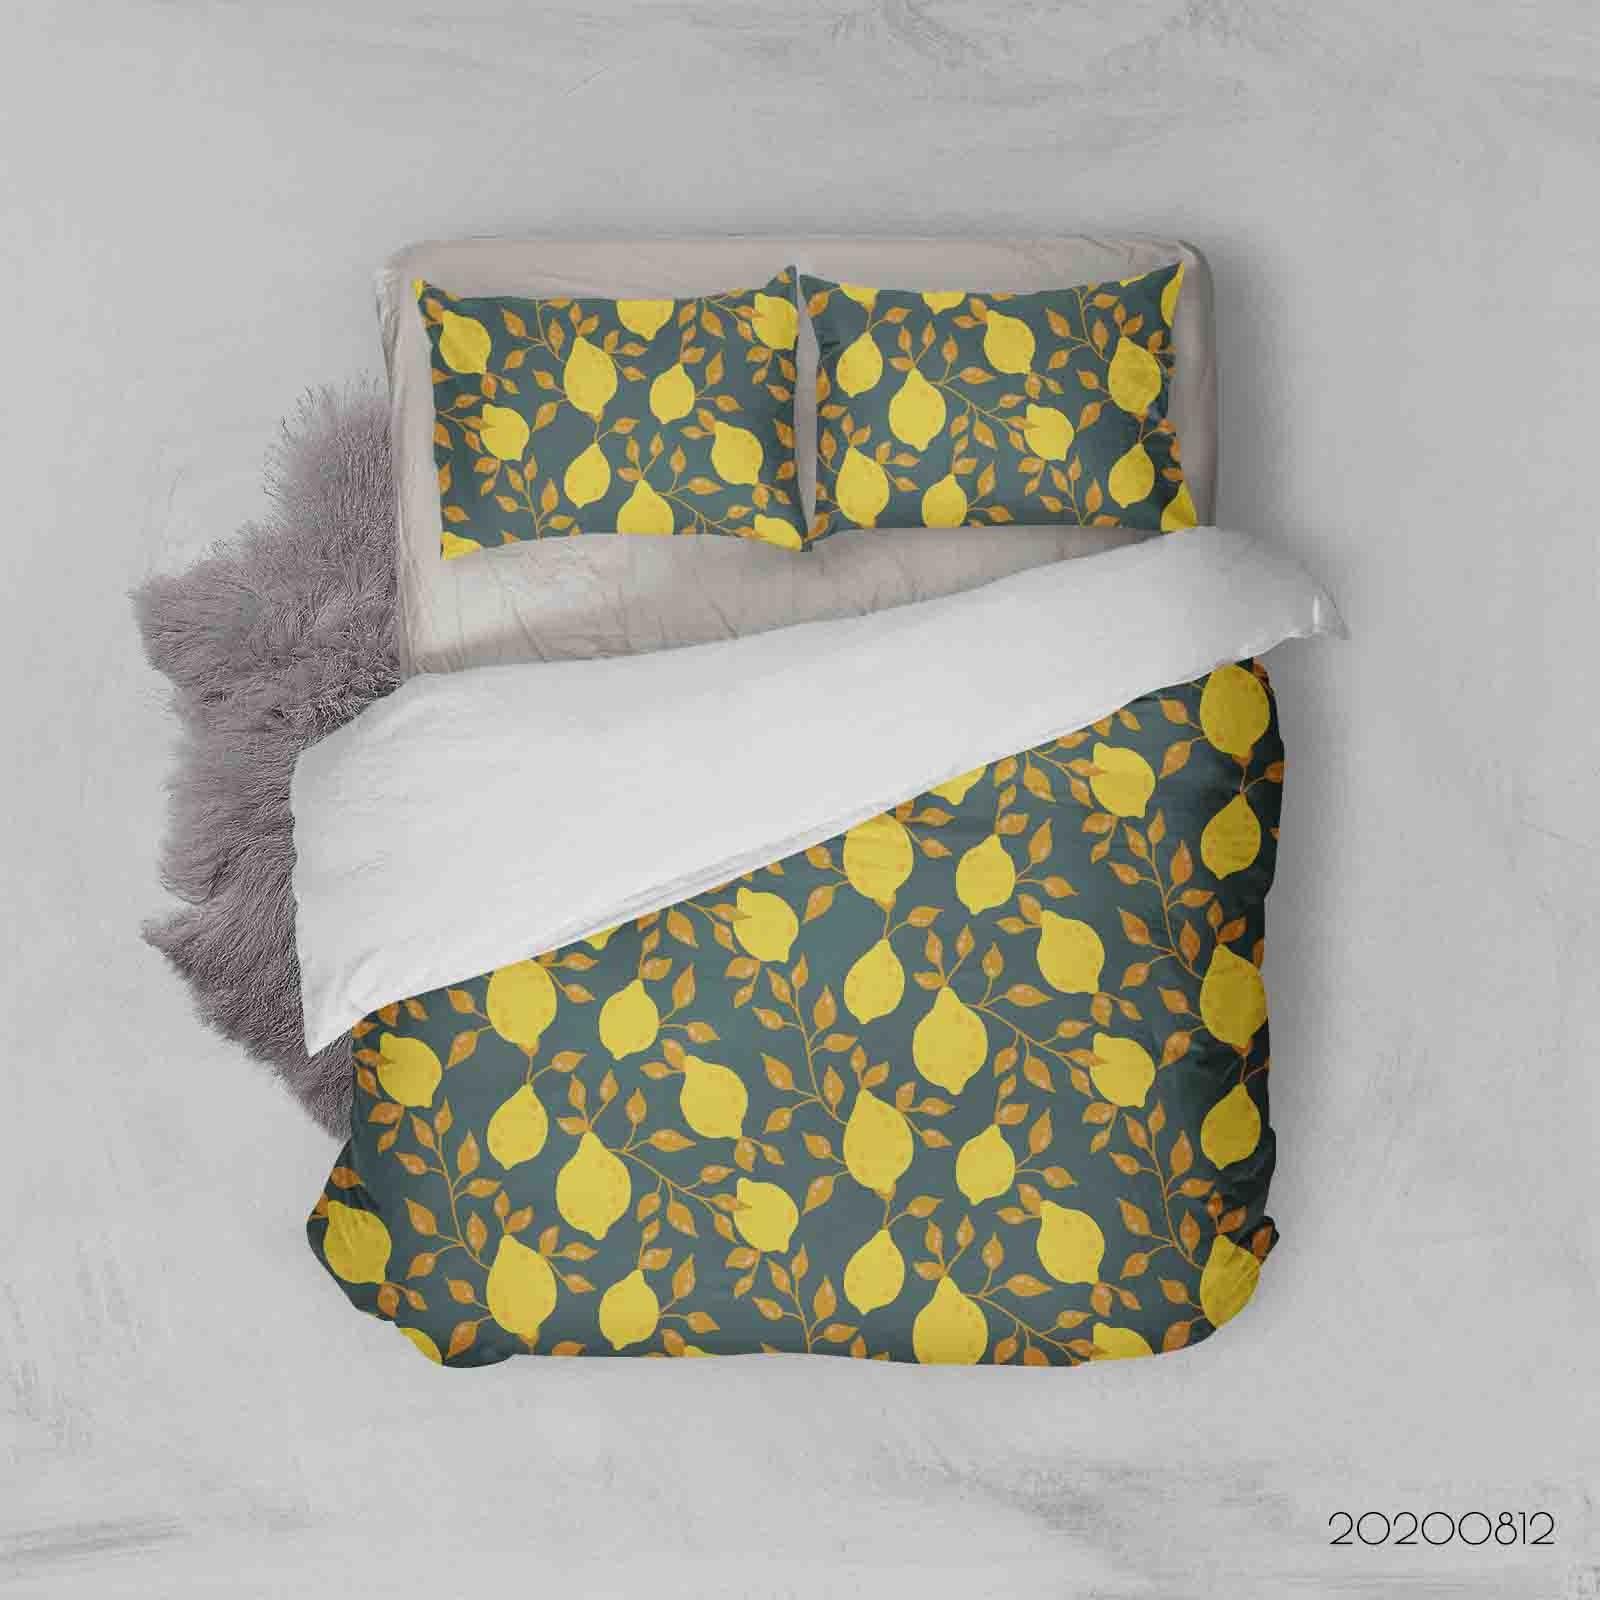 3D Vintage Lemon Pattern Quilt Cover Set Bedding Set Duvet Cover Pillowcases LXL- Jess Art Decoration